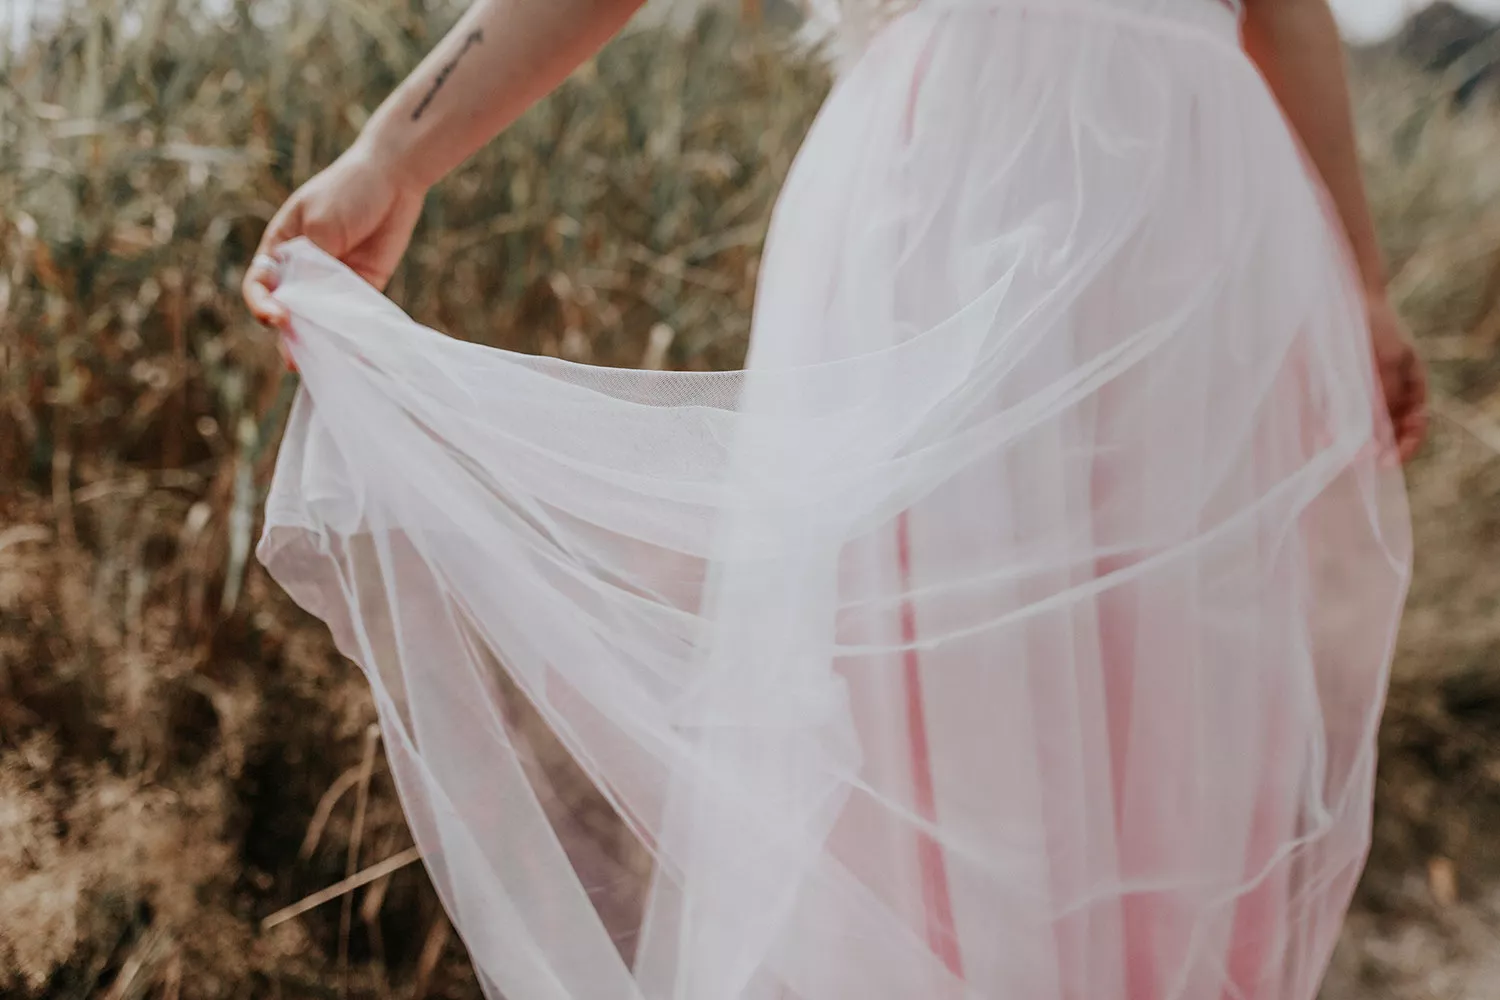 紗質婚紗樣式呈現自然浪漫飄逸感，透光更顯得潔白無瑕。